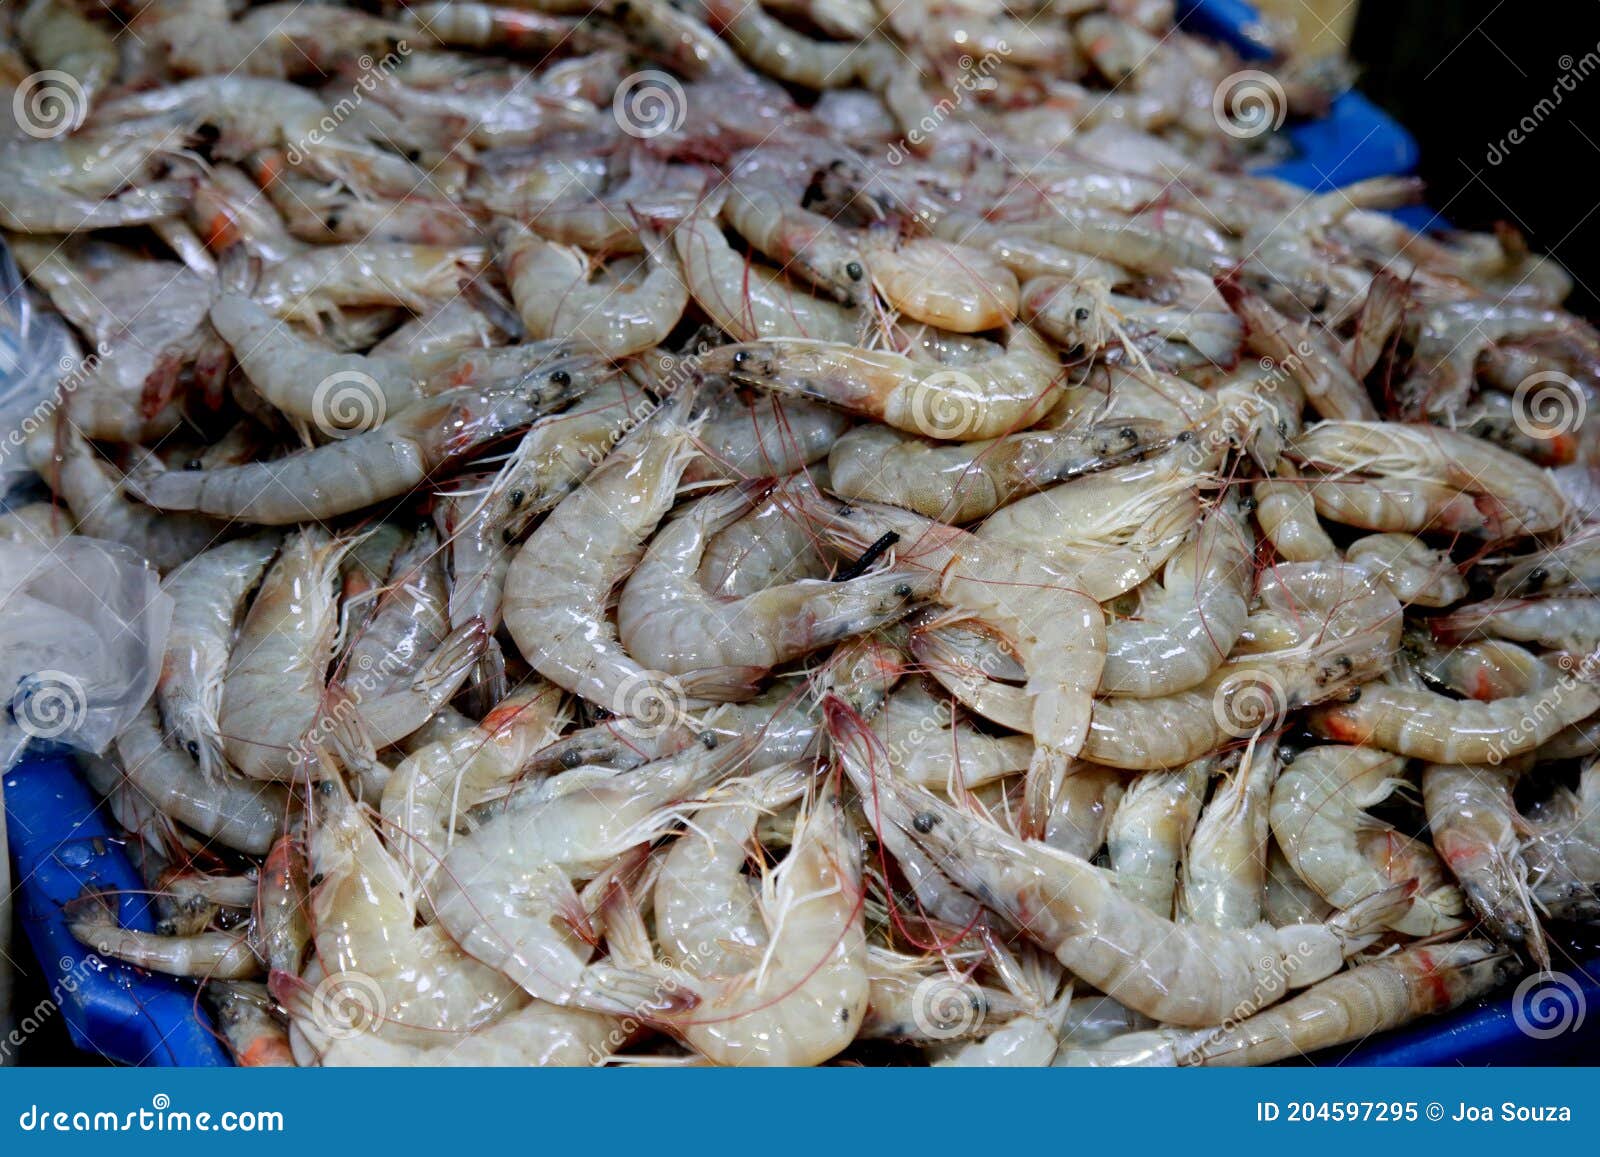 shrimp for sale in salvador market